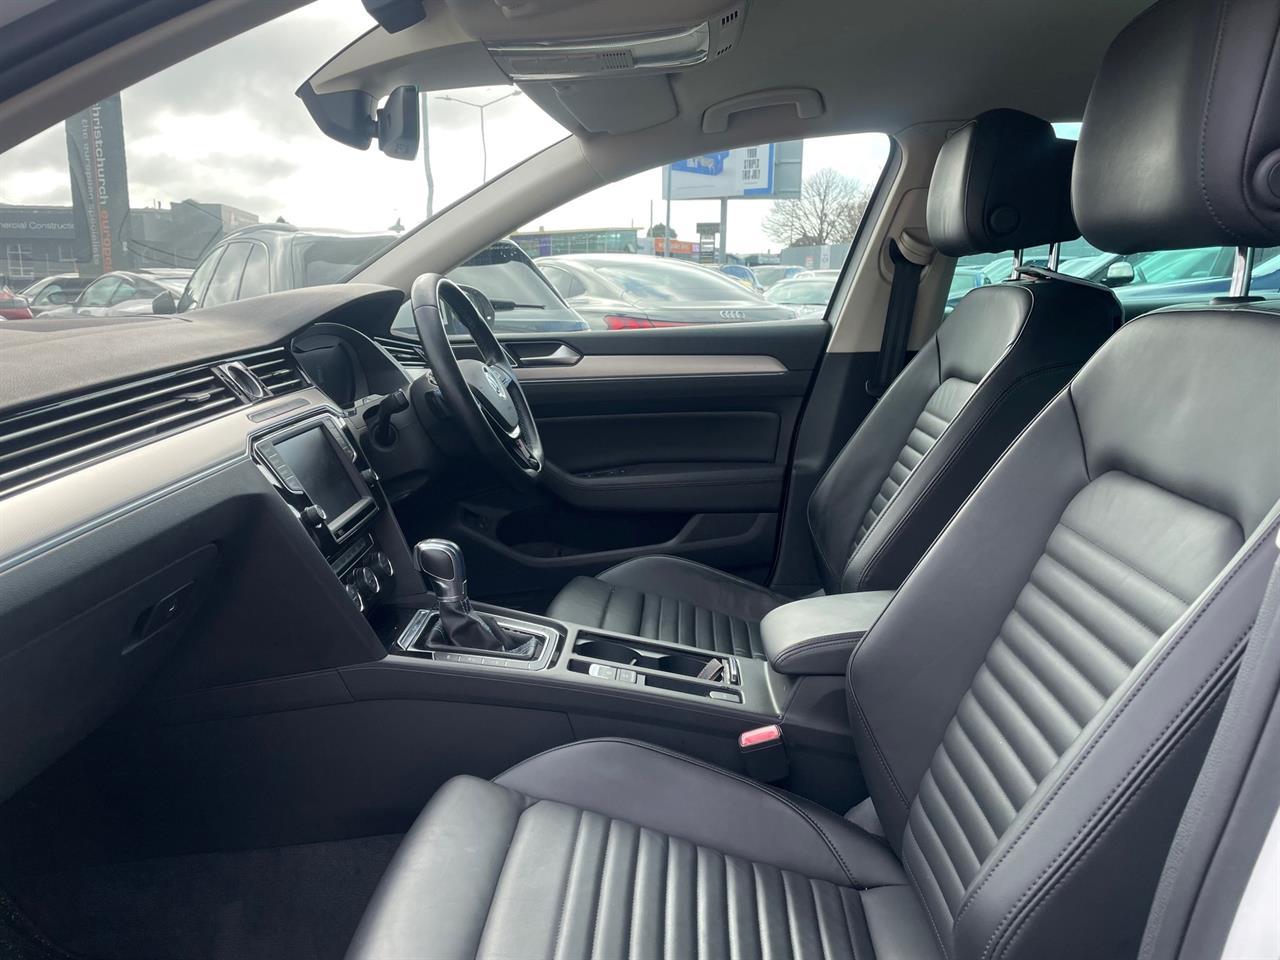 image-6, 2016 Volkswagen Passat GTE Plug in Hybrid Wagon at Christchurch